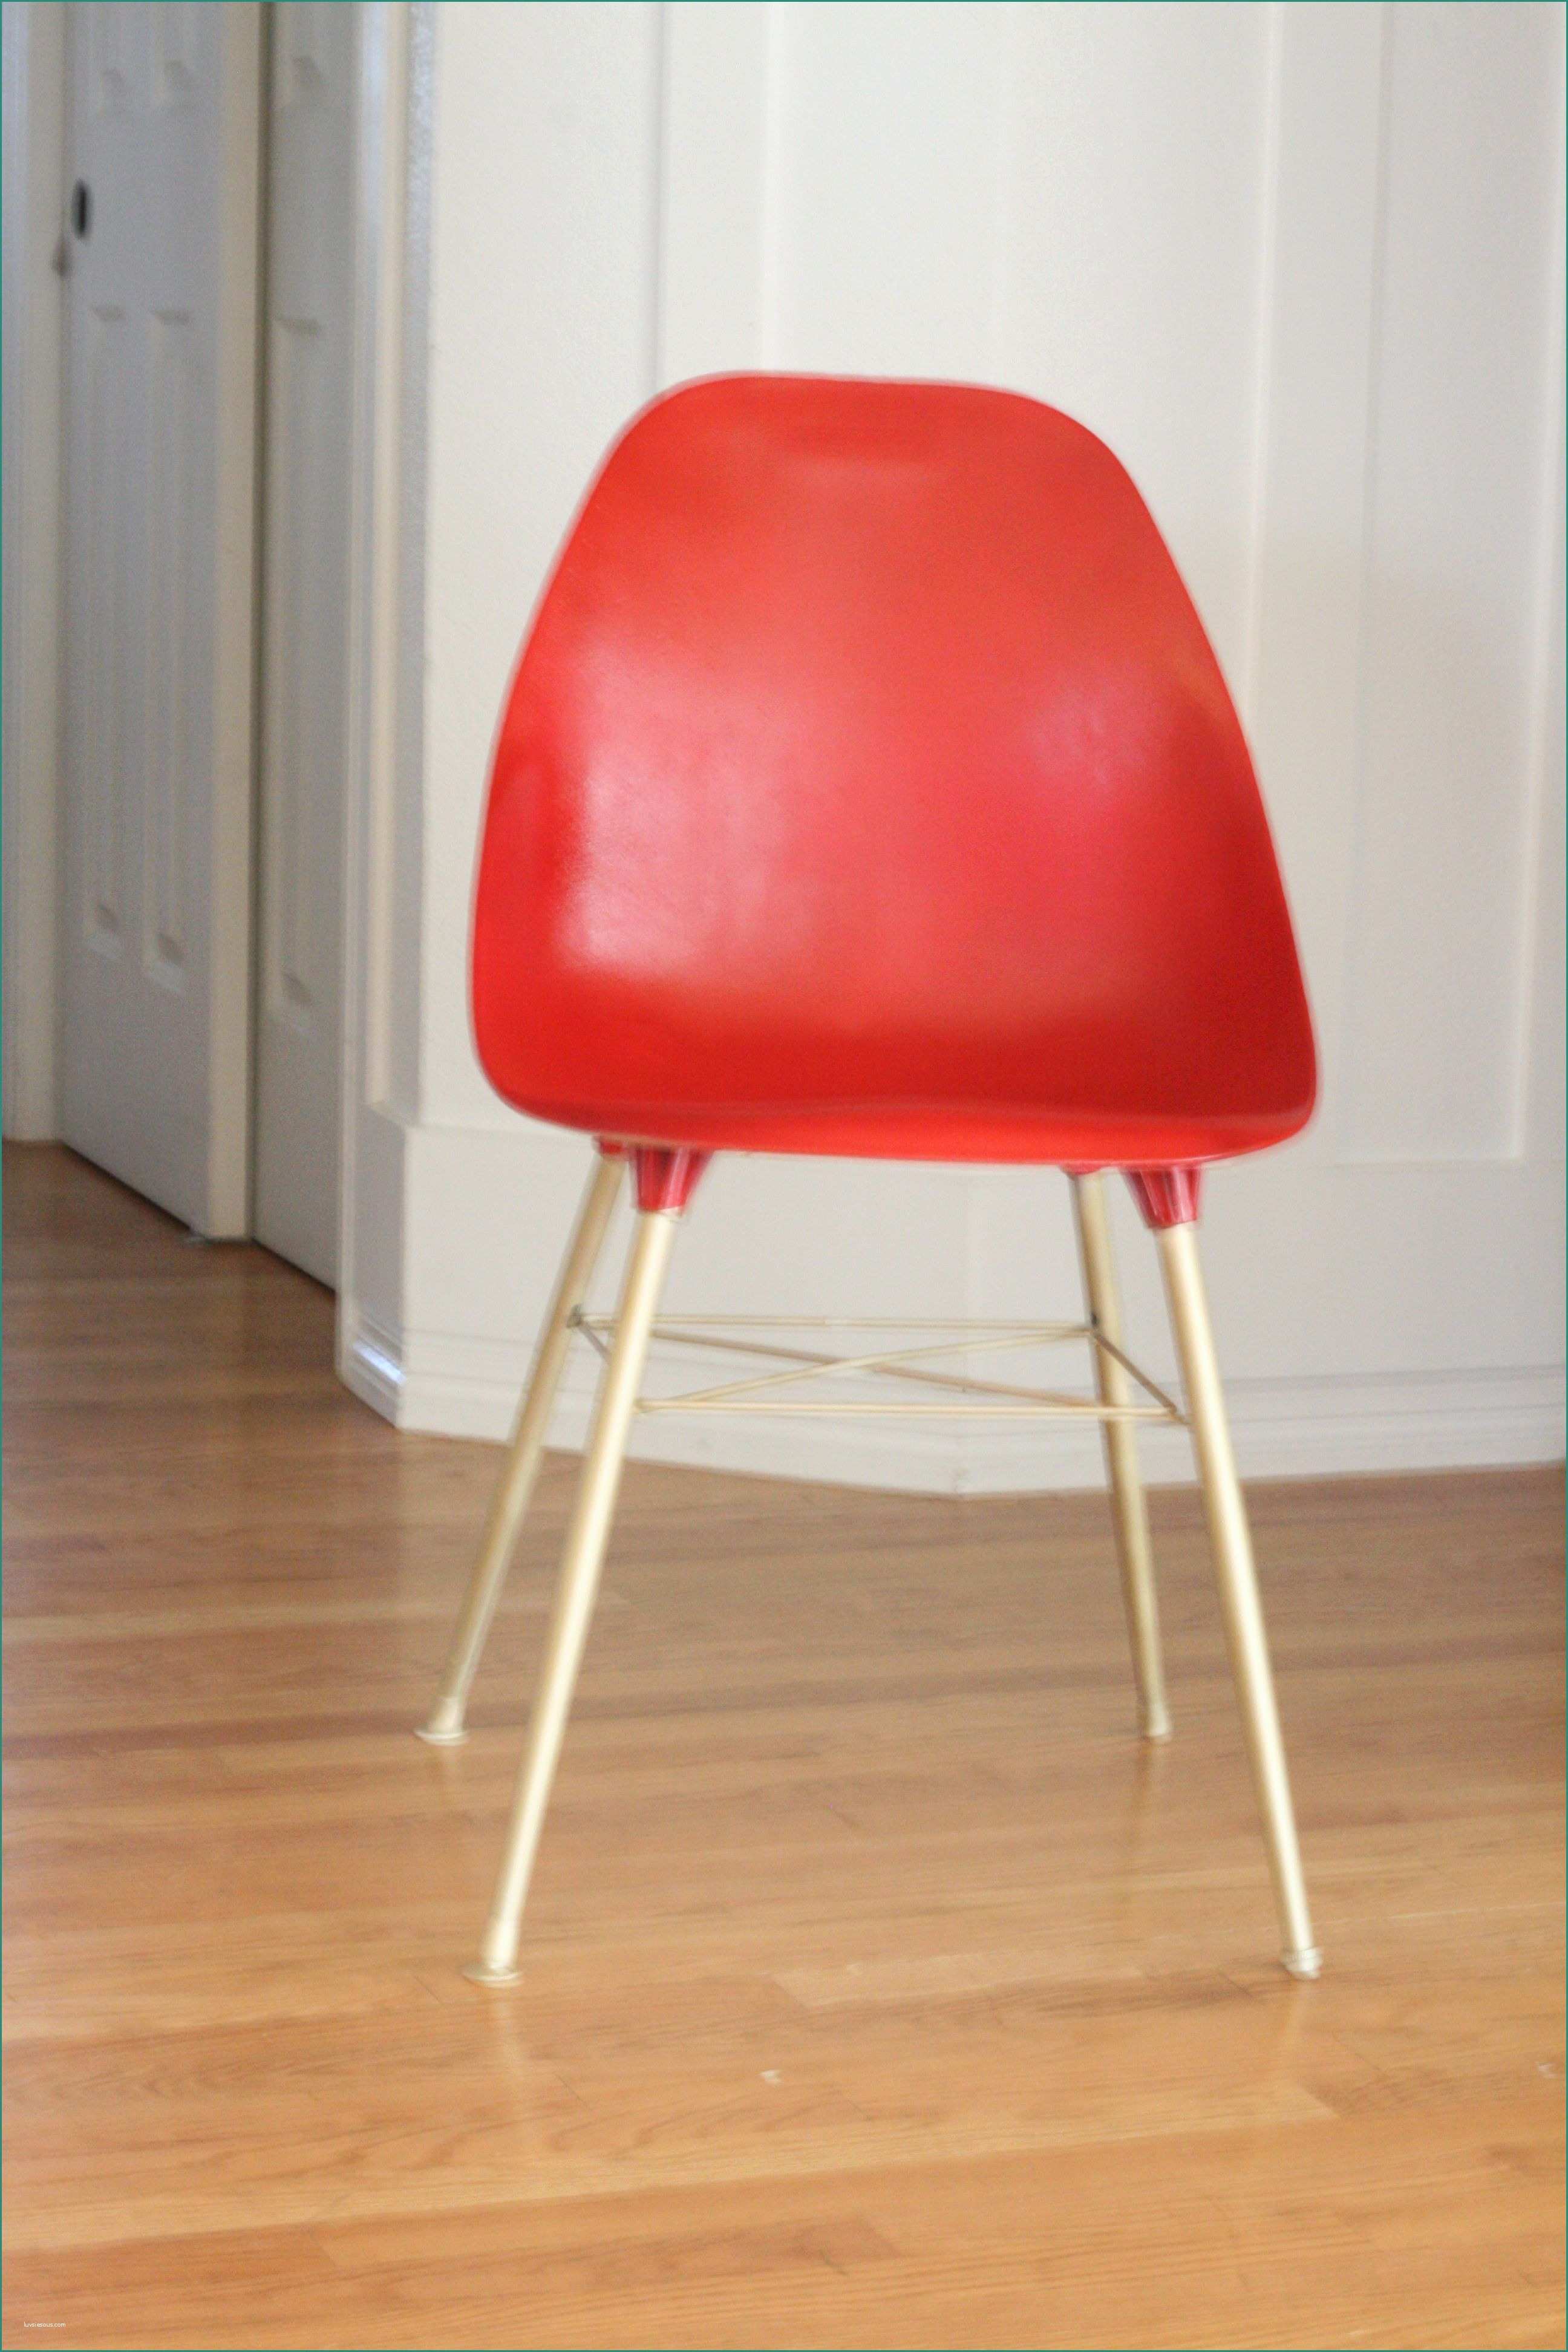 Eames Plastic Chair E Eames Chair Thriftdee Pinterest